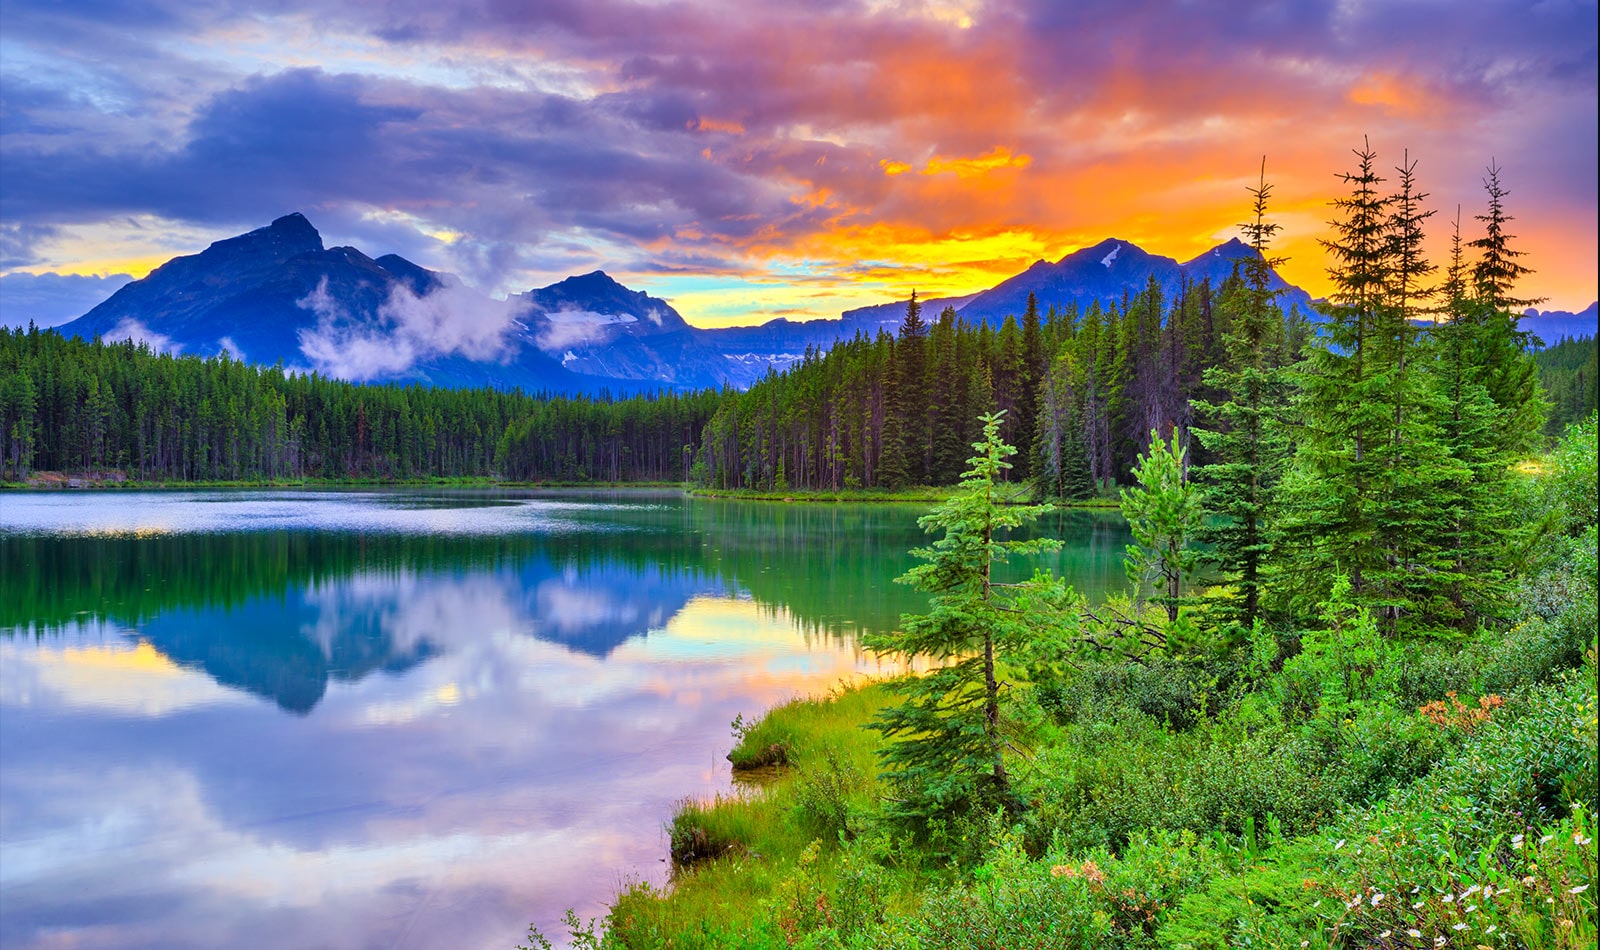 Thẻ này mô tả chất lượng hình ảnh. Hình ảnh hoàng hôn đầy màu sắc trong một hồ nước với những khu rừng bao quanh.